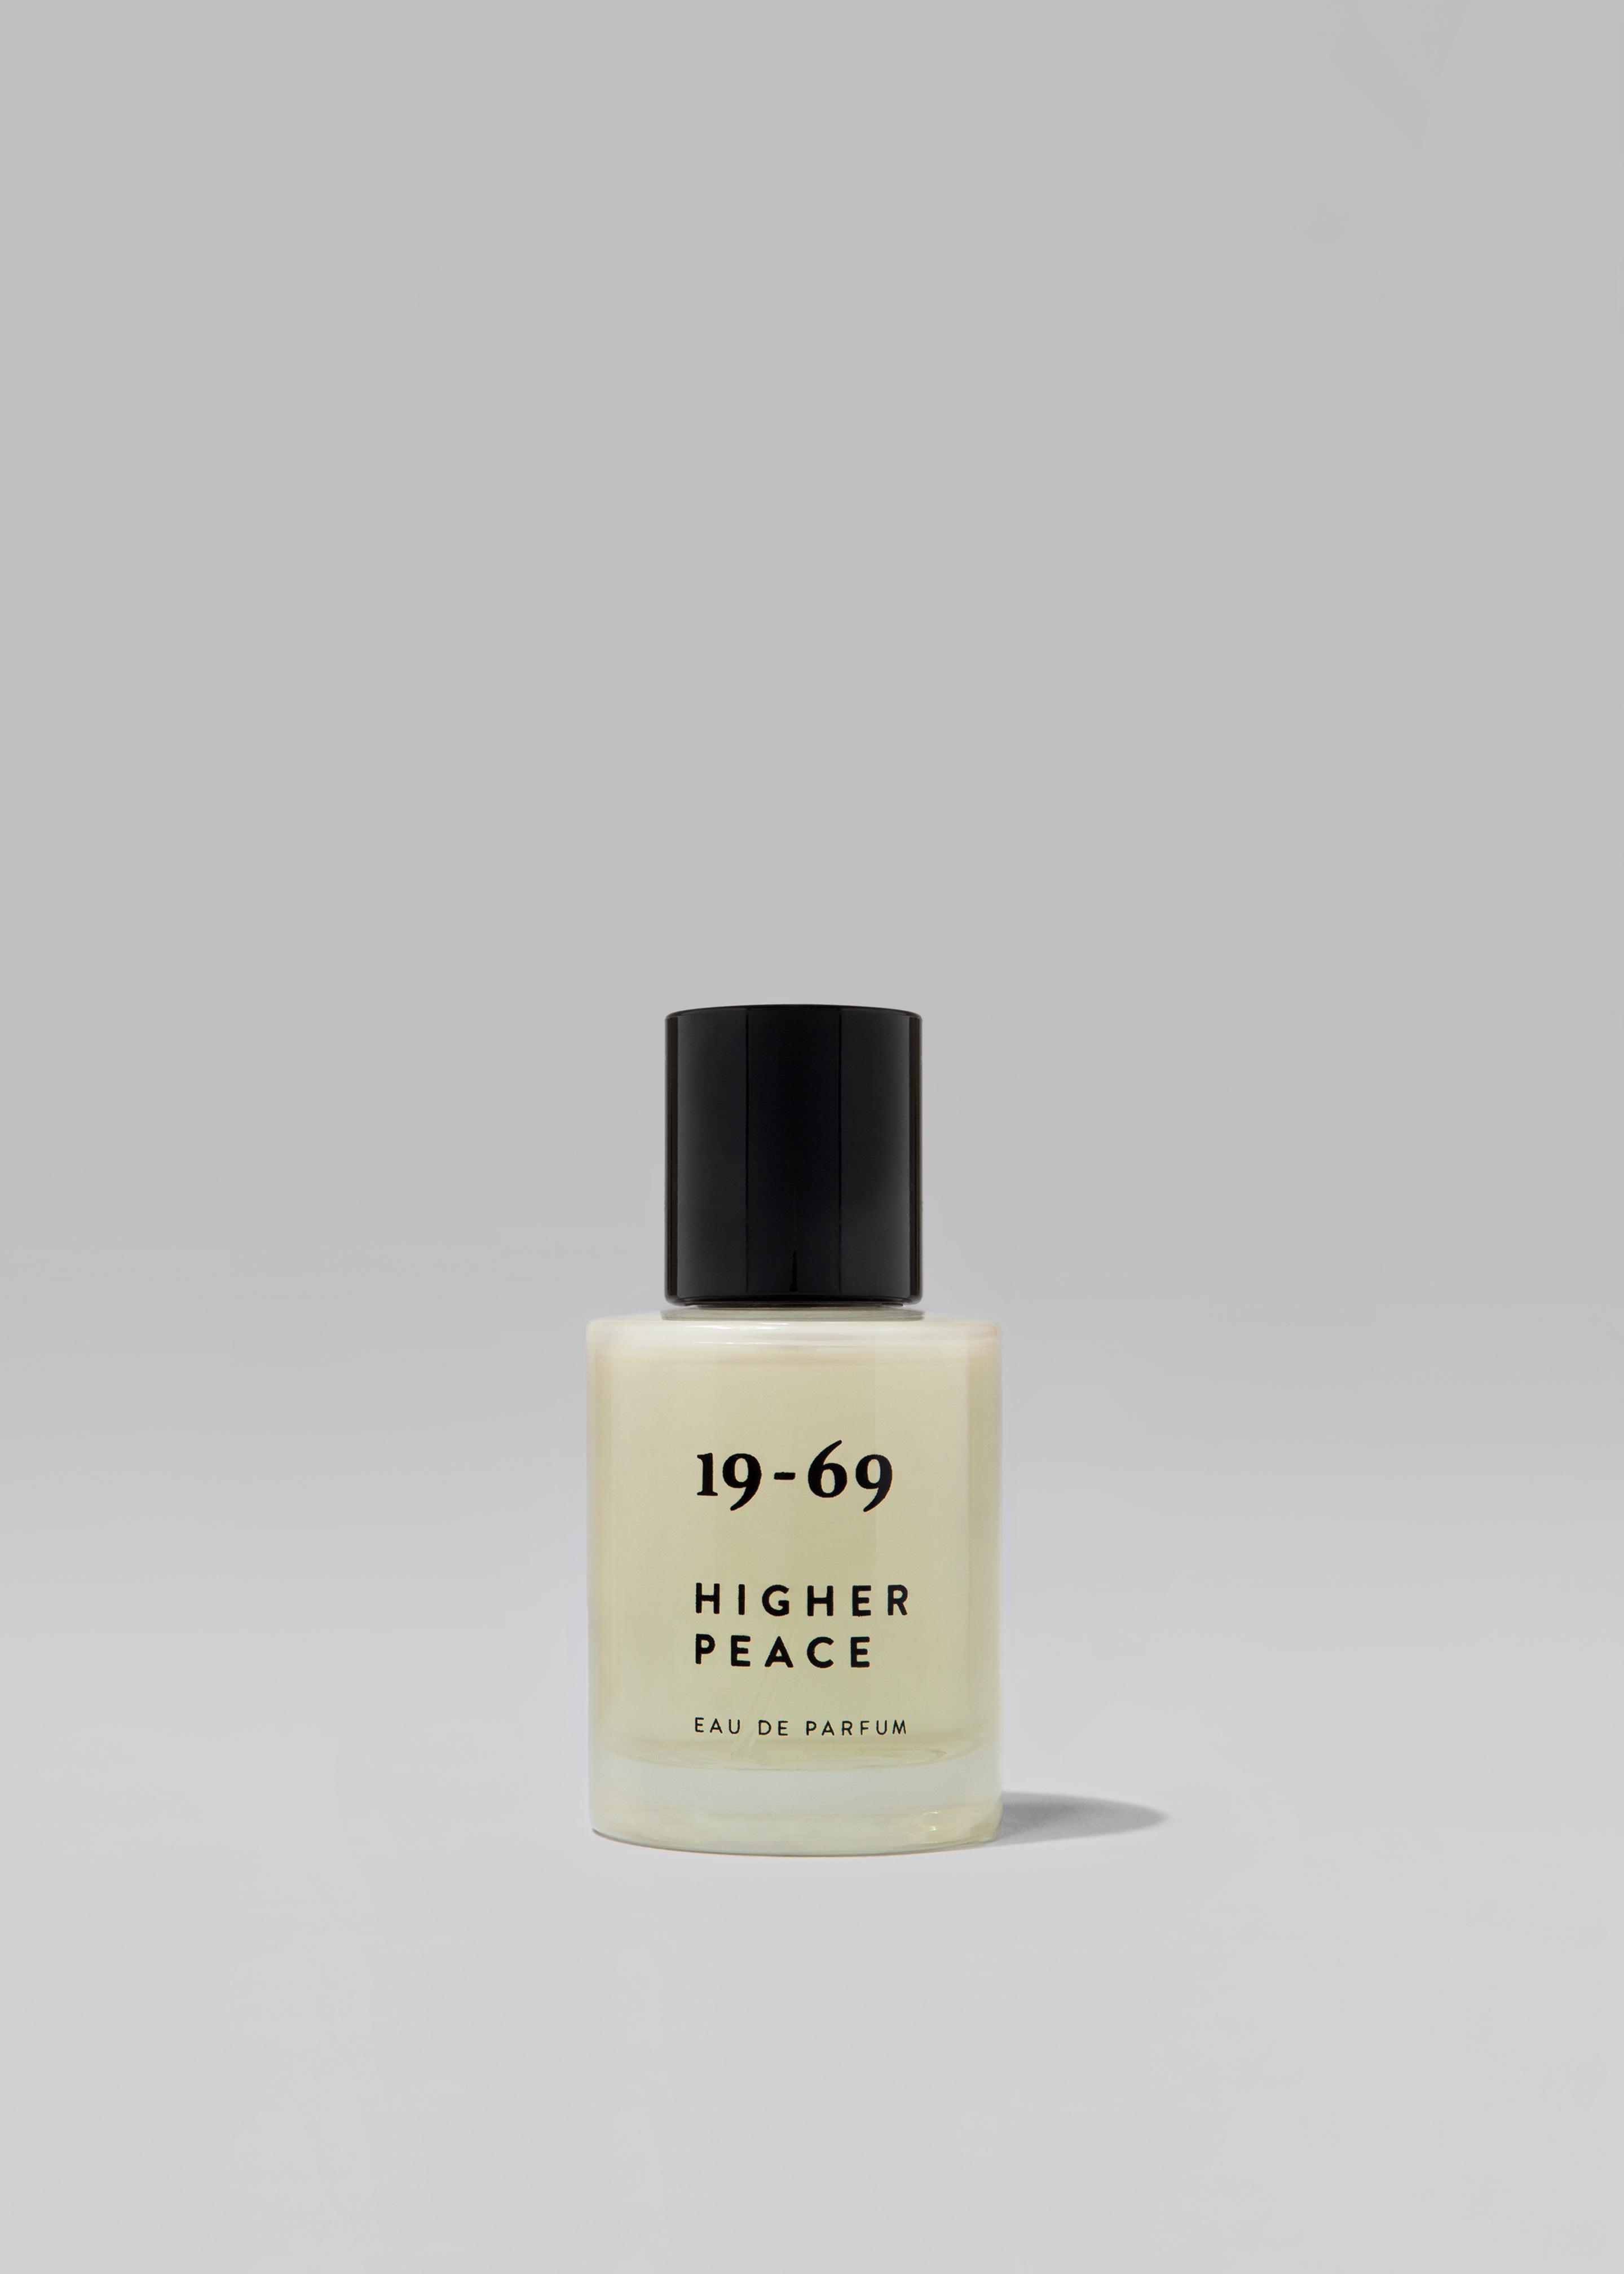 19-69 Higher Peace Eau De Parfum - 3